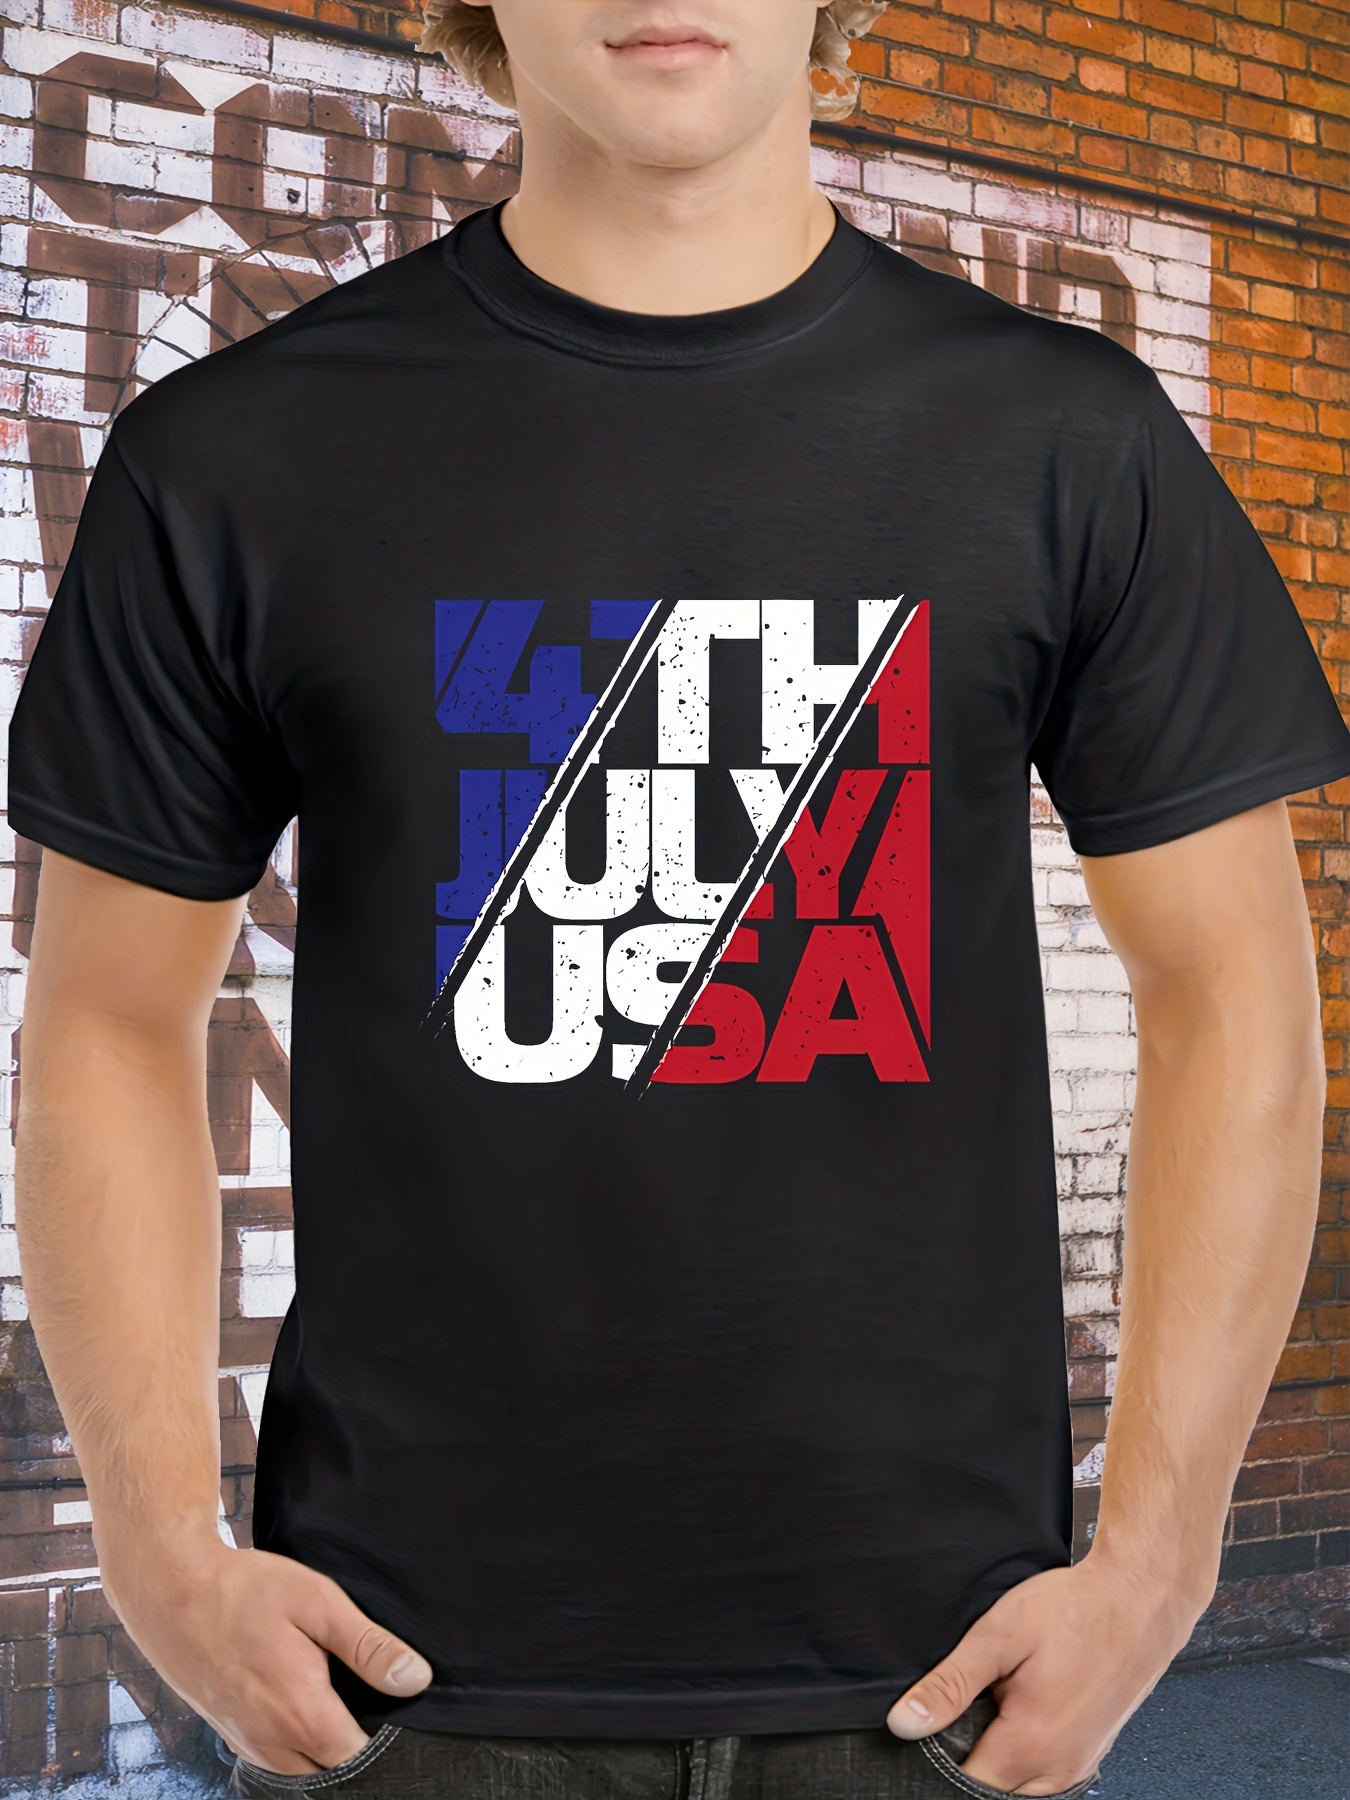 Tampa Bay Rays Shirt - T-shirts - AliExpress